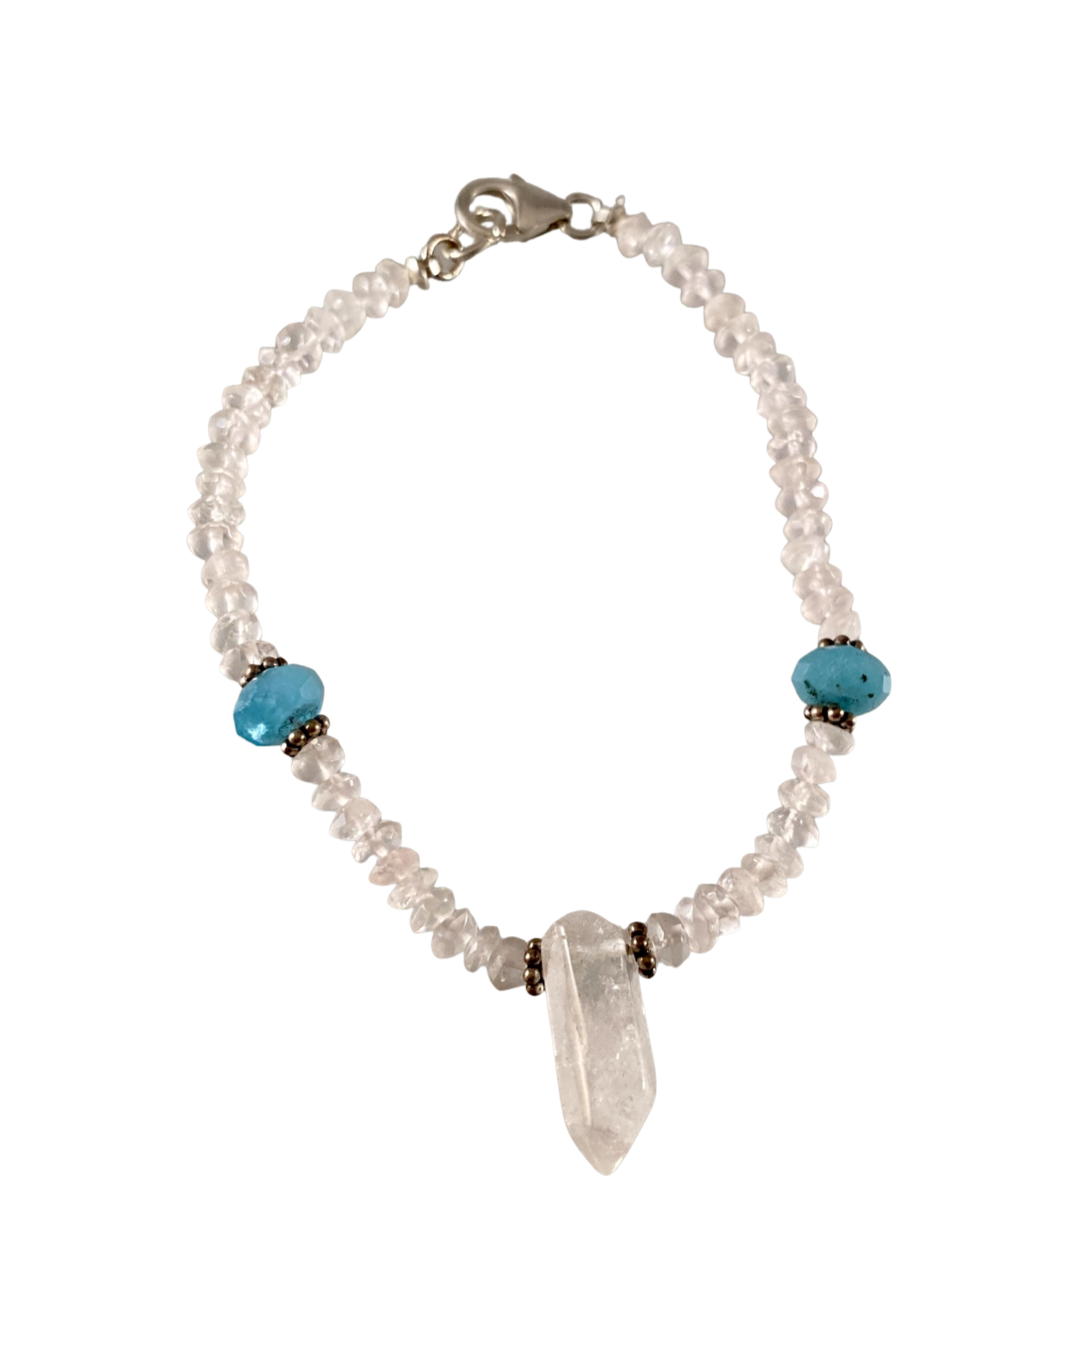 Faceted Gemstone & Quartz Crystal Bracelet